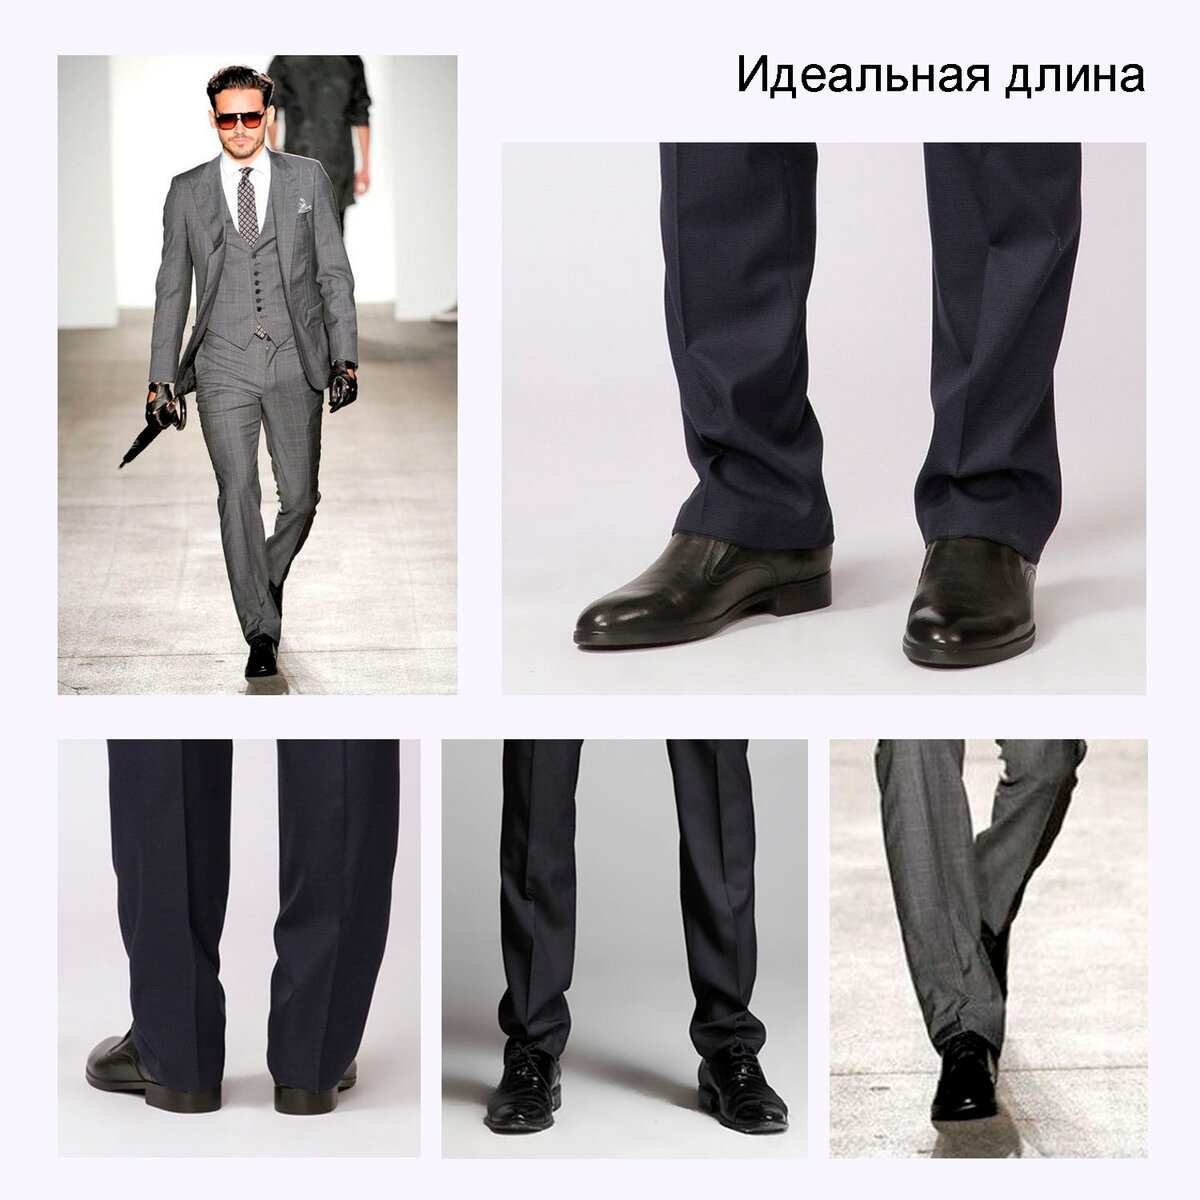 Какова правильная длина мужских классических и зауженных брюк для современного стильного молодого человека Определяется ли длина брюк у мужчин в зависимости от роста, полноты и возраста